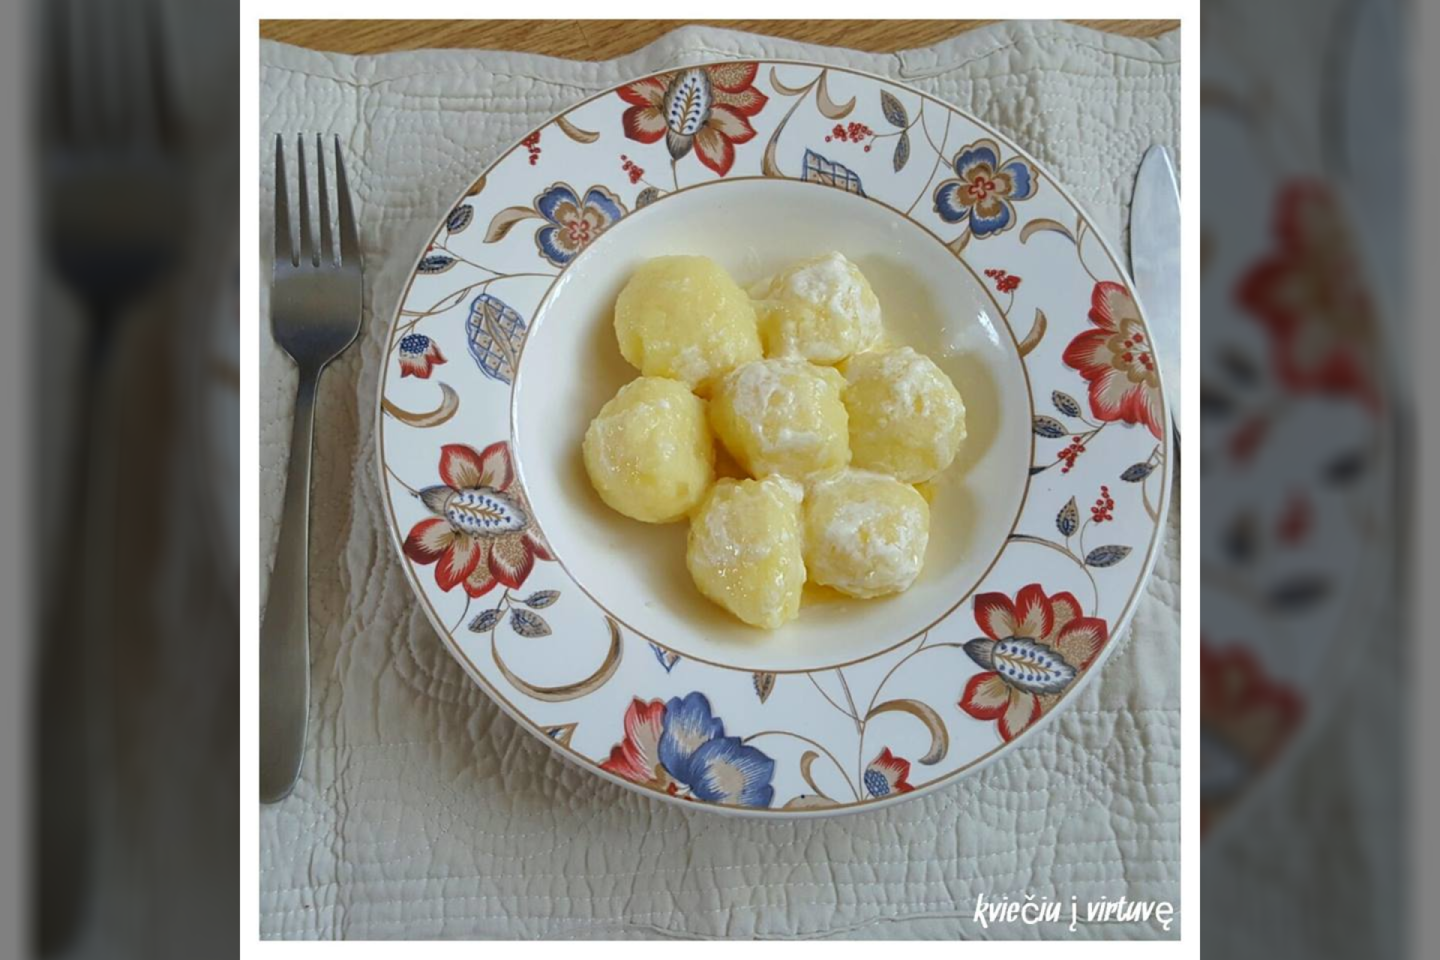  Šilkiniai bulvių kukulaičiai.<br> Nuotr. iš „Kviečiu į virtuvę“.